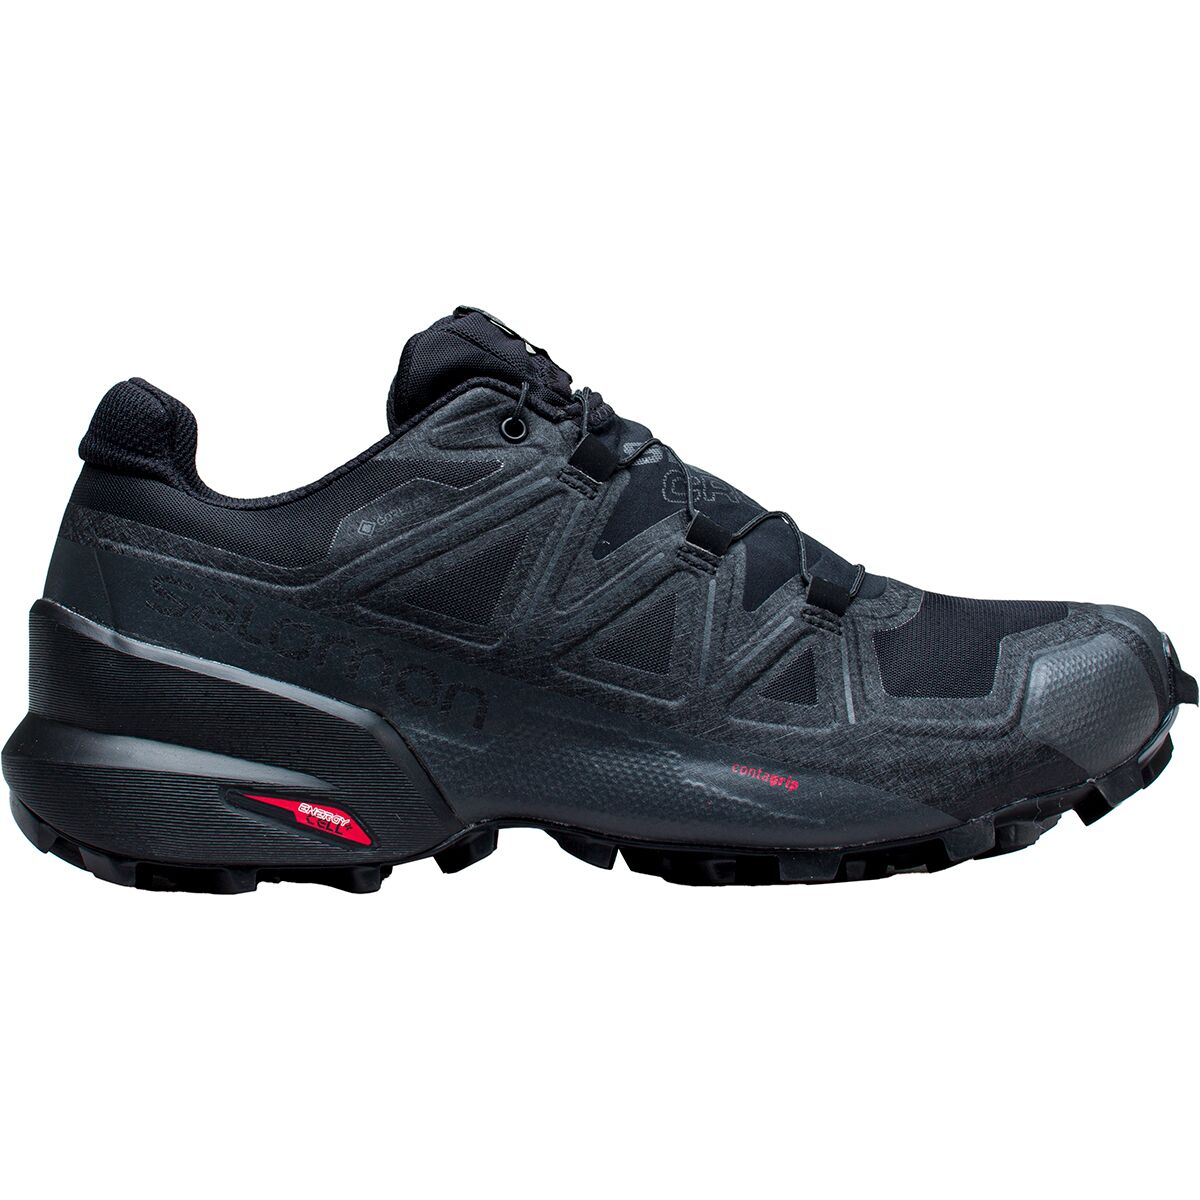 Salomon GTX Trail Running Shoe - Women's - Footwear